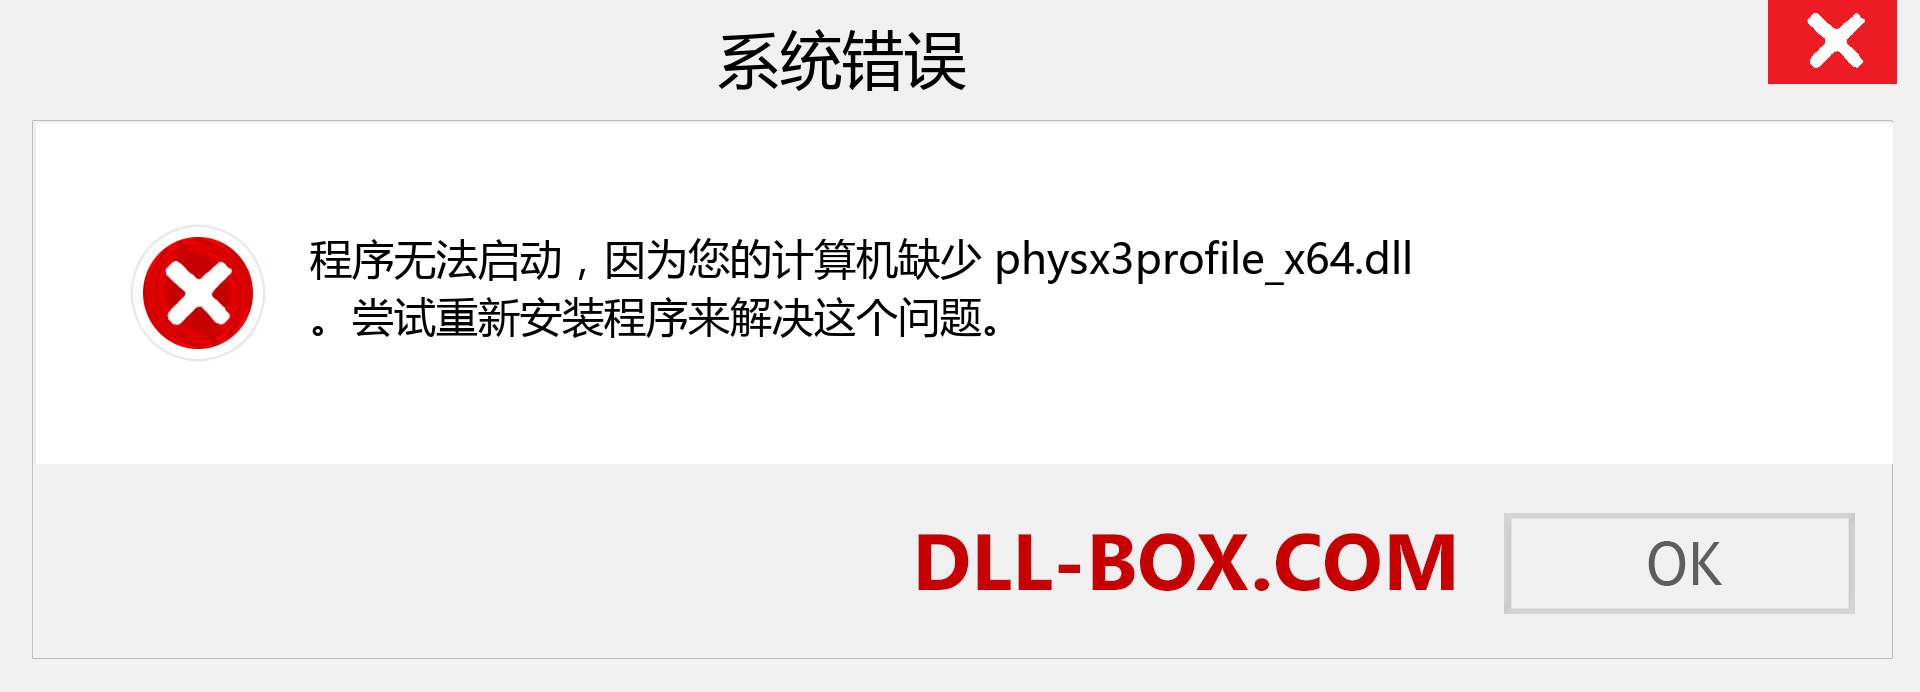 physx3profile_x64.dll 文件丢失？。 适用于 Windows 7、8、10 的下载 - 修复 Windows、照片、图像上的 physx3profile_x64 dll 丢失错误